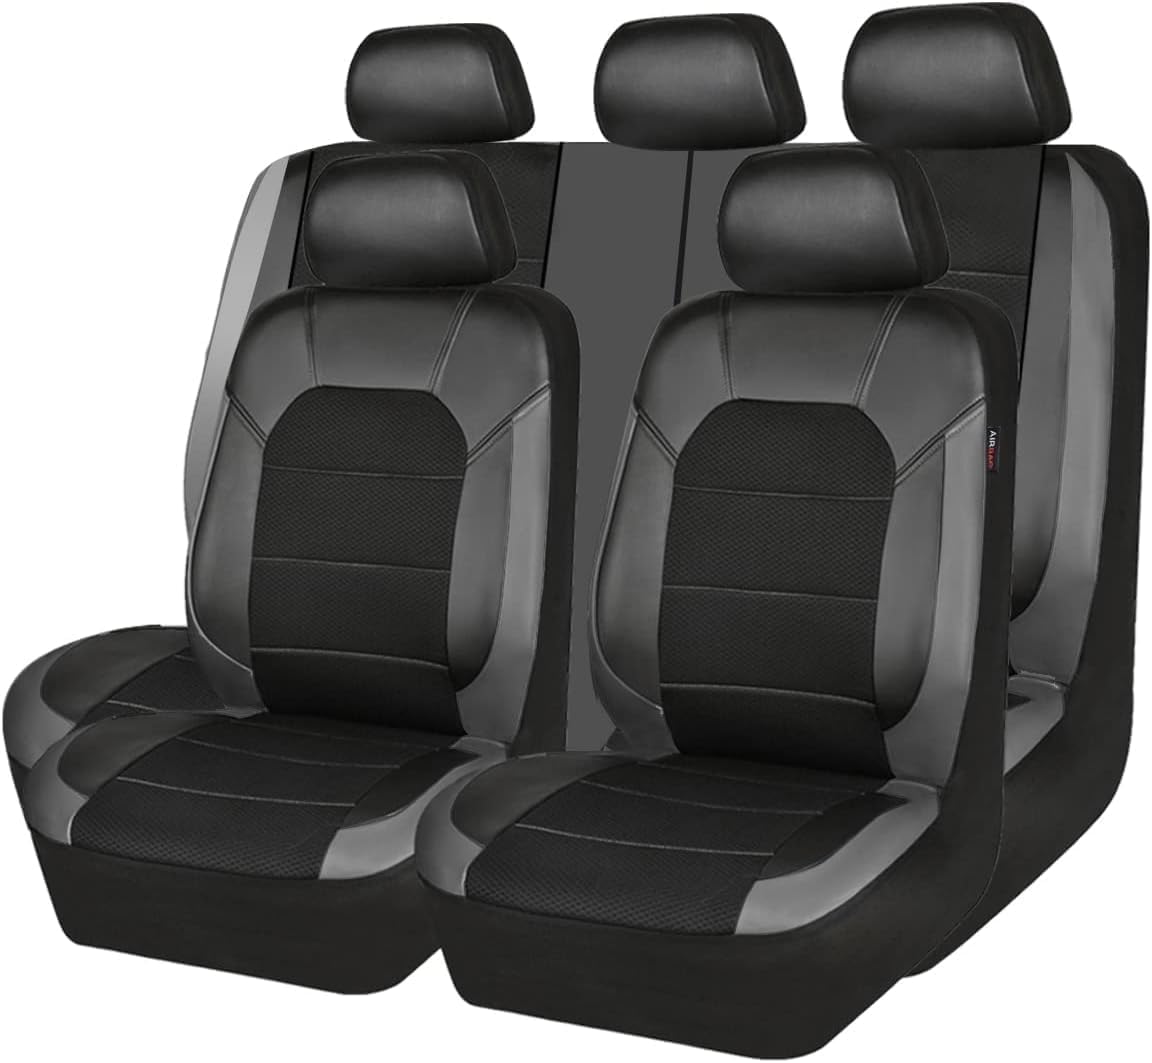 DHONDT Autositzbezüge Set Für Mazda BT-50 2006-2018, Sitzbezügesets Autositzbezüge Set Für 5 Sitzer, Autositzzubehör,D von DHONDT